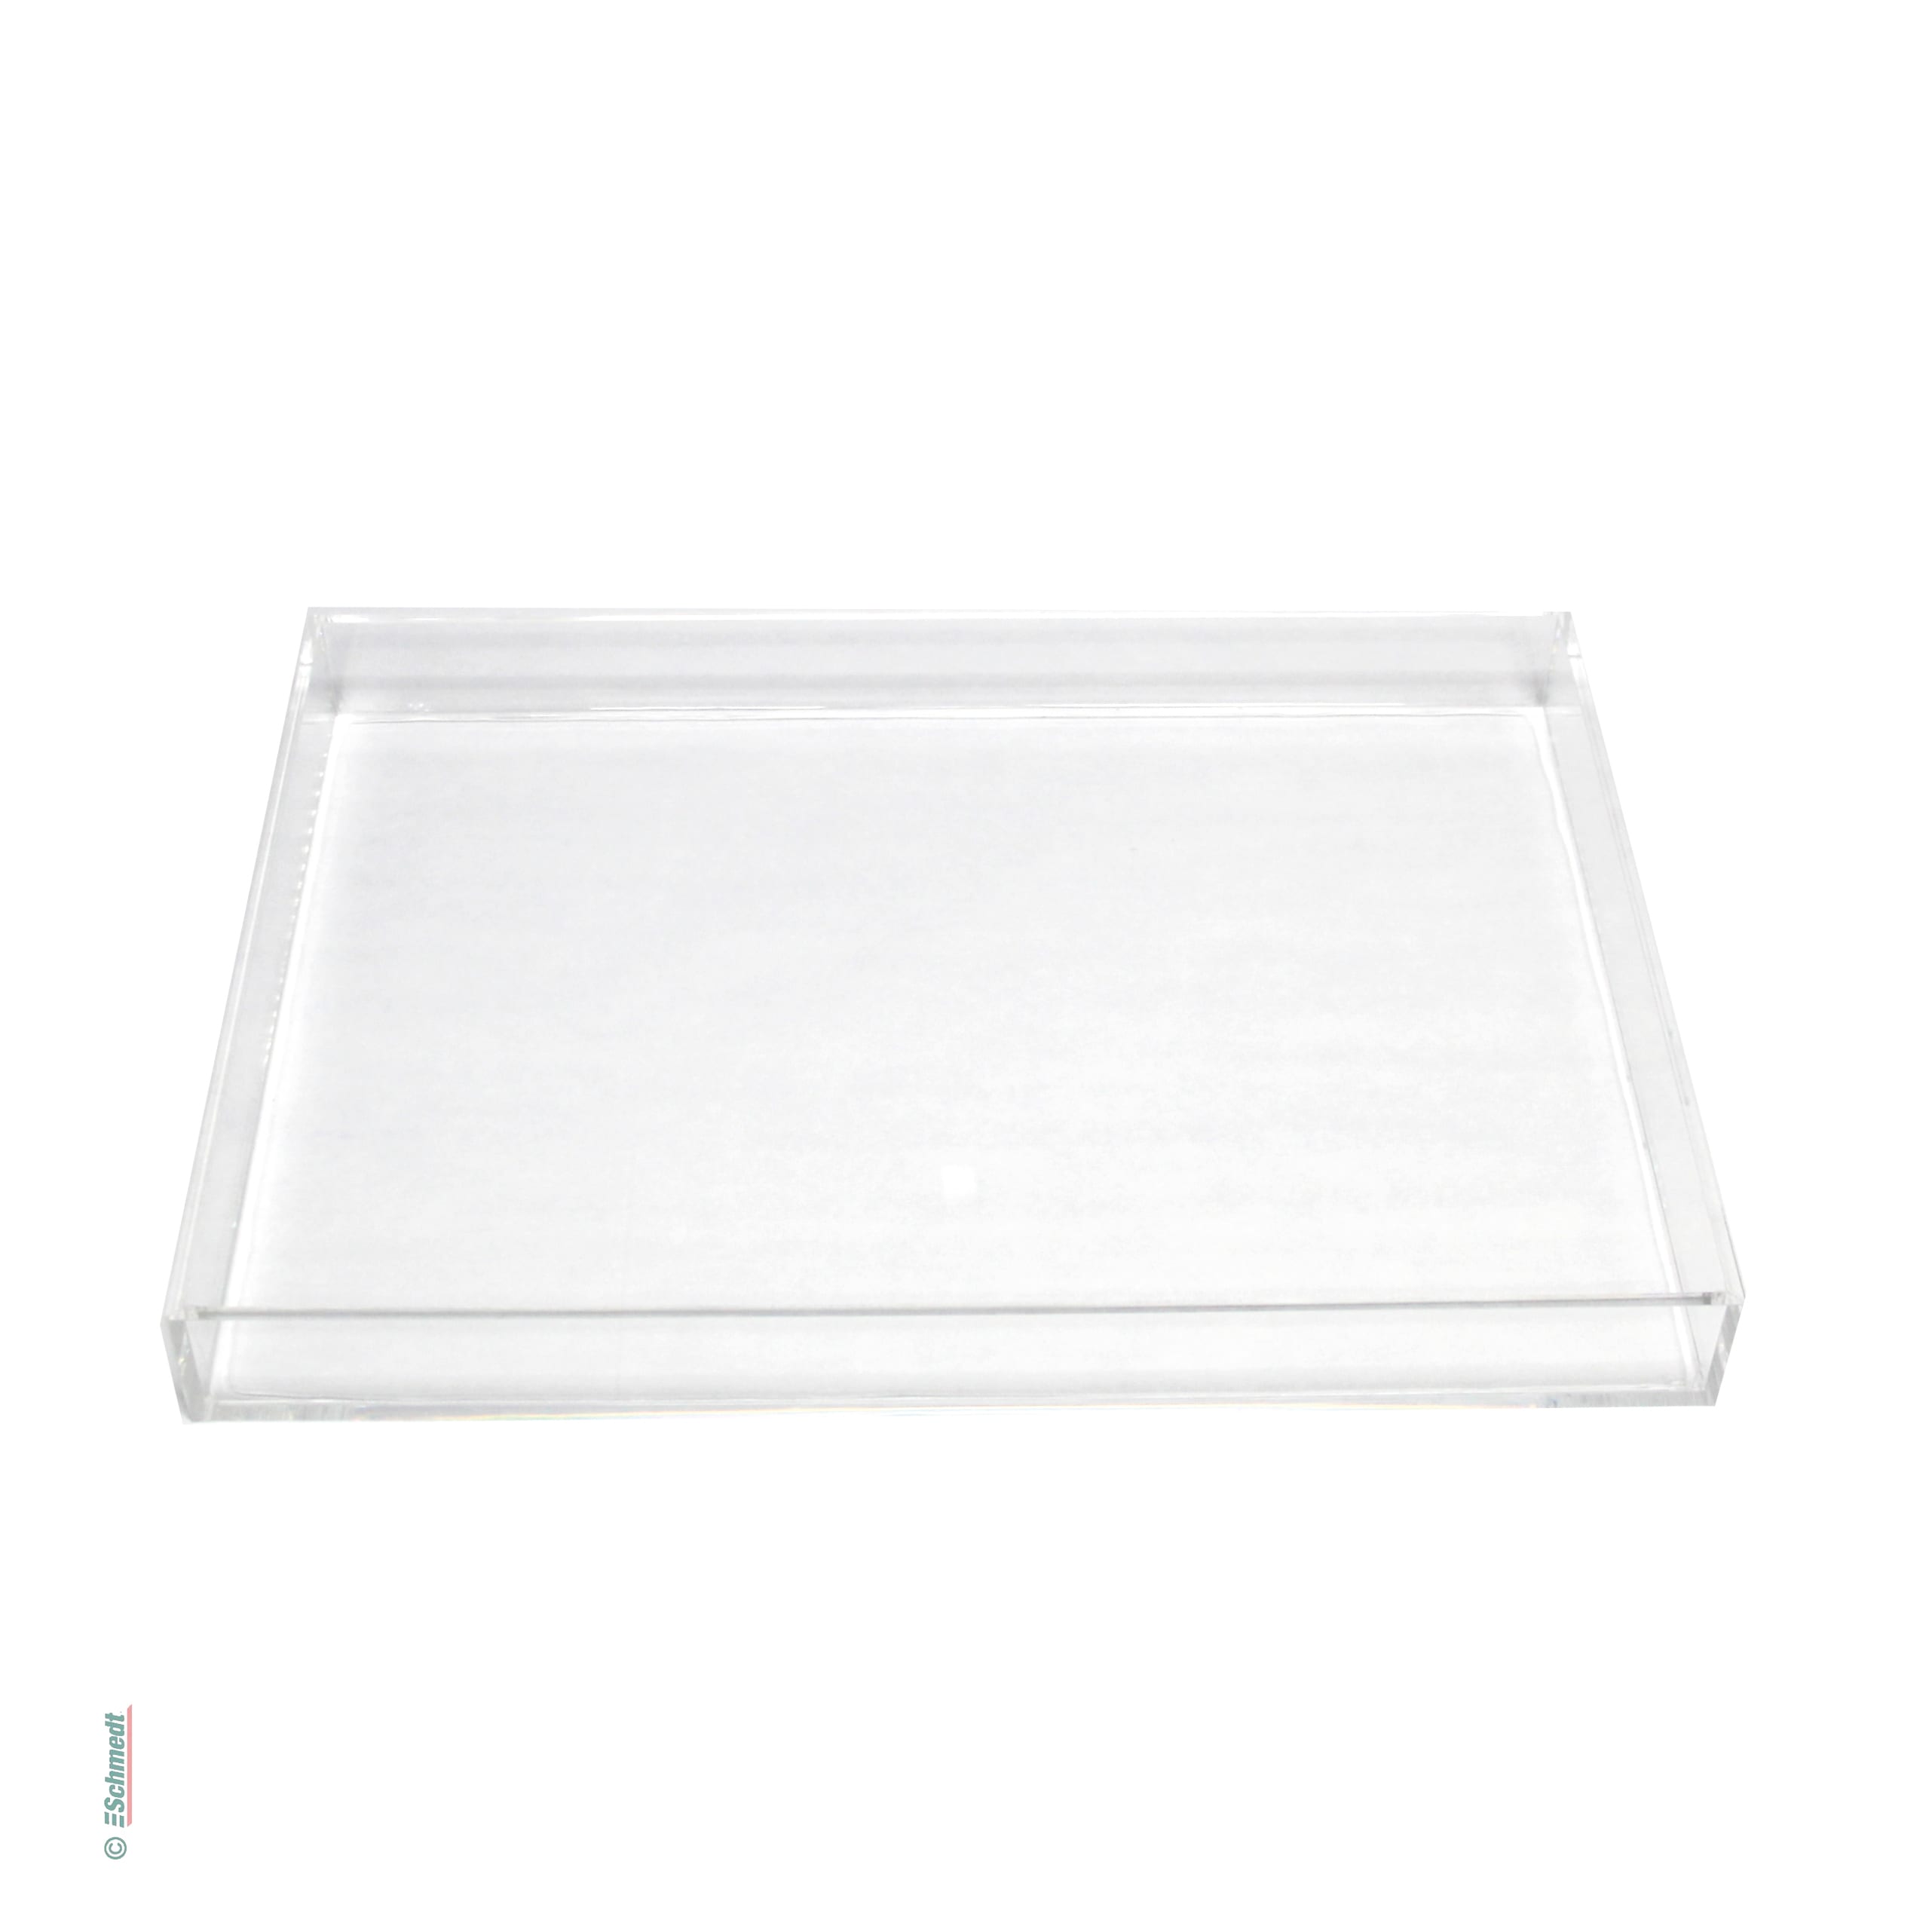 Bassine à marbrer de verre acrylique - Taille: 52 x 37 x 5 cm (dimensions intérieures) - pour créér papiers marbrés...